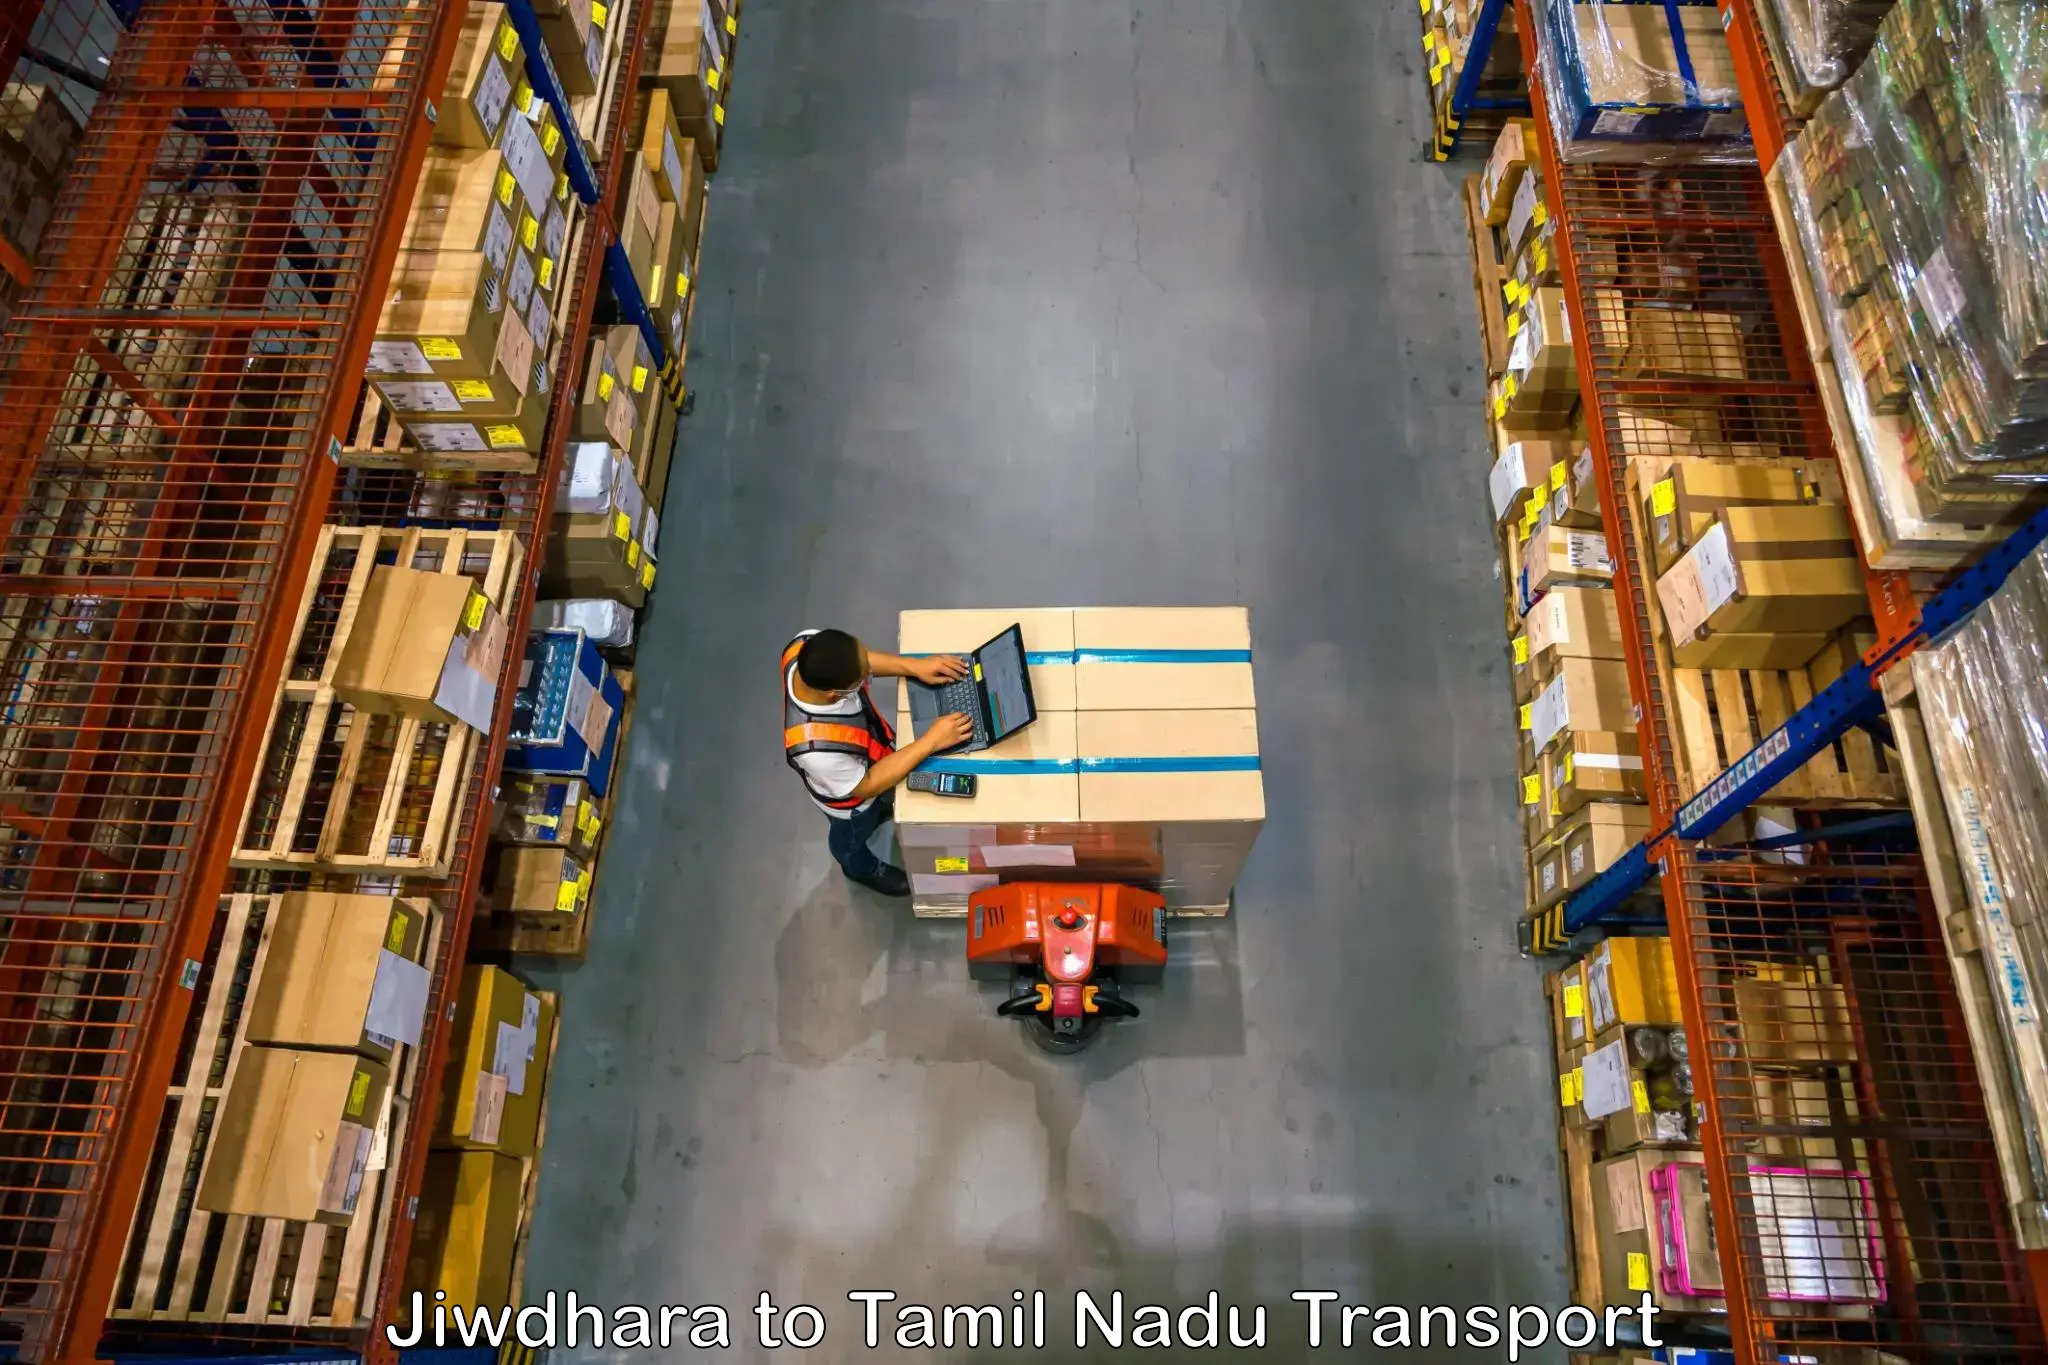 Cargo transport services Jiwdhara to Memalur